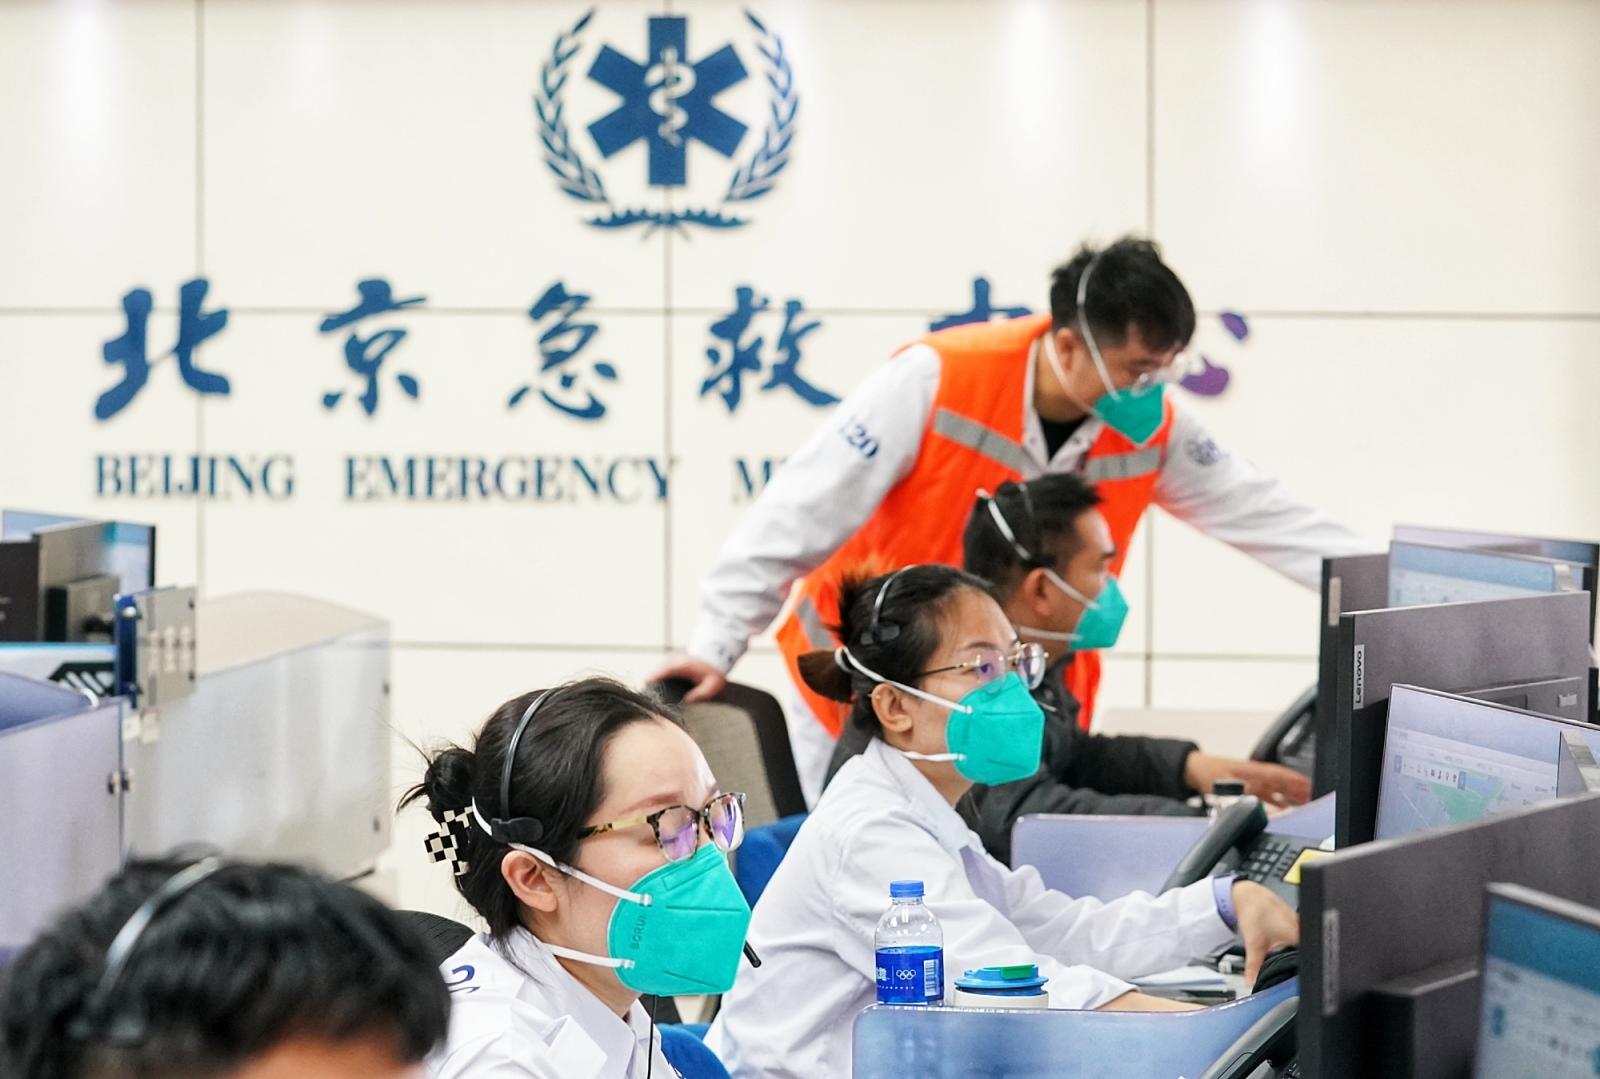 陈志北京急救中心图片